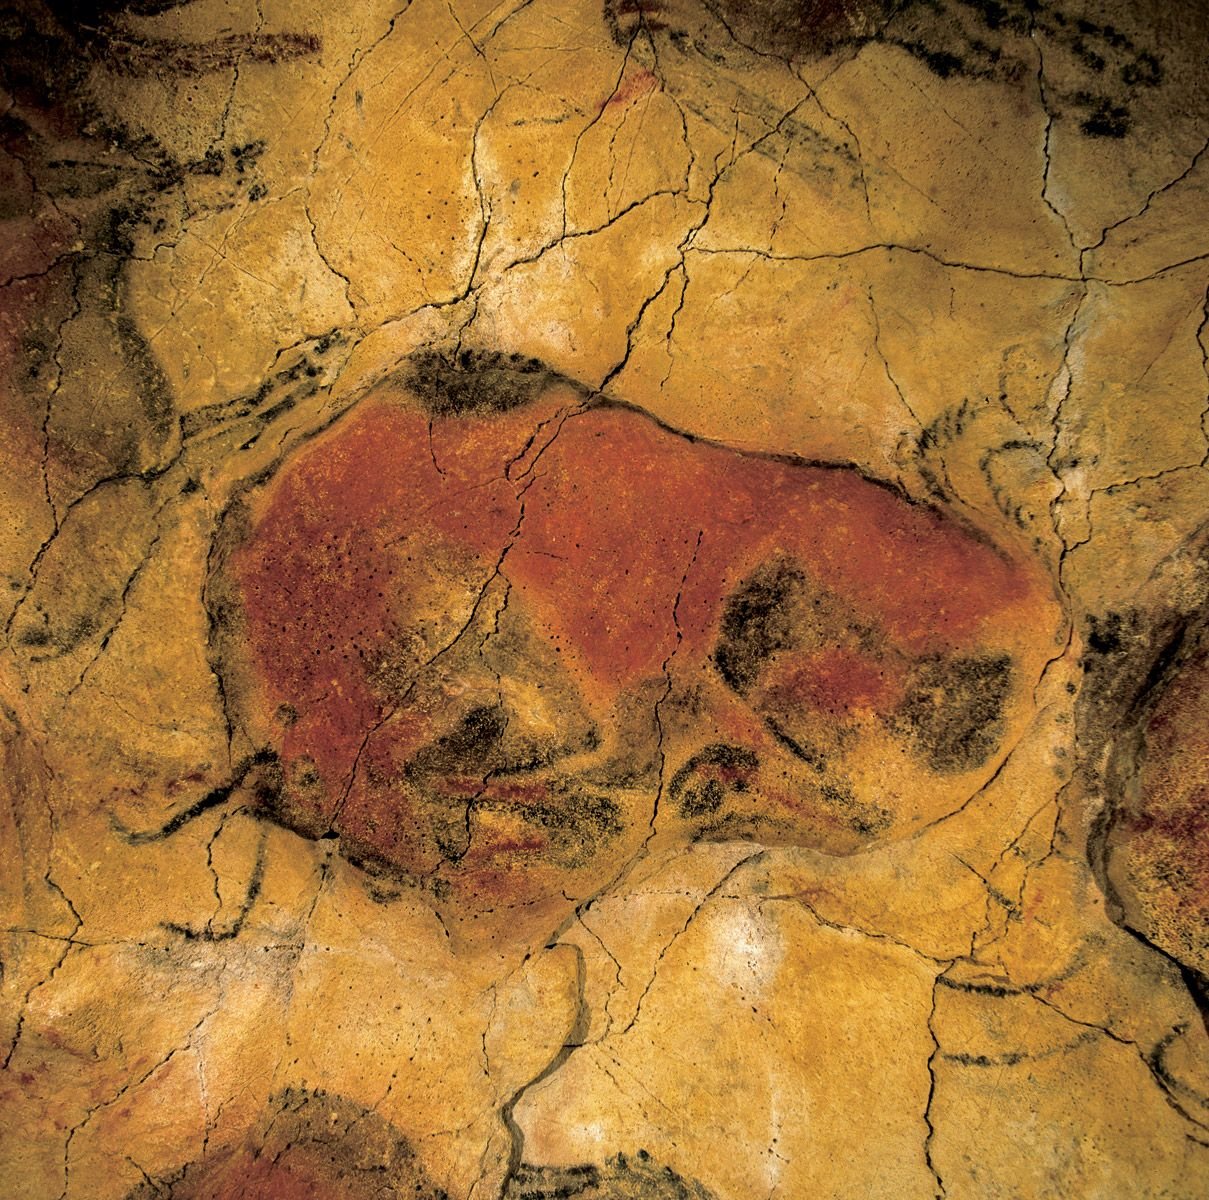 De la arte. Бизон палеолит пещера Альтамира Испания. Пещера Альтамира в Испании. Живопись пещеры Альтамира. Наскальная живопись Бизон пещера Альтамира.